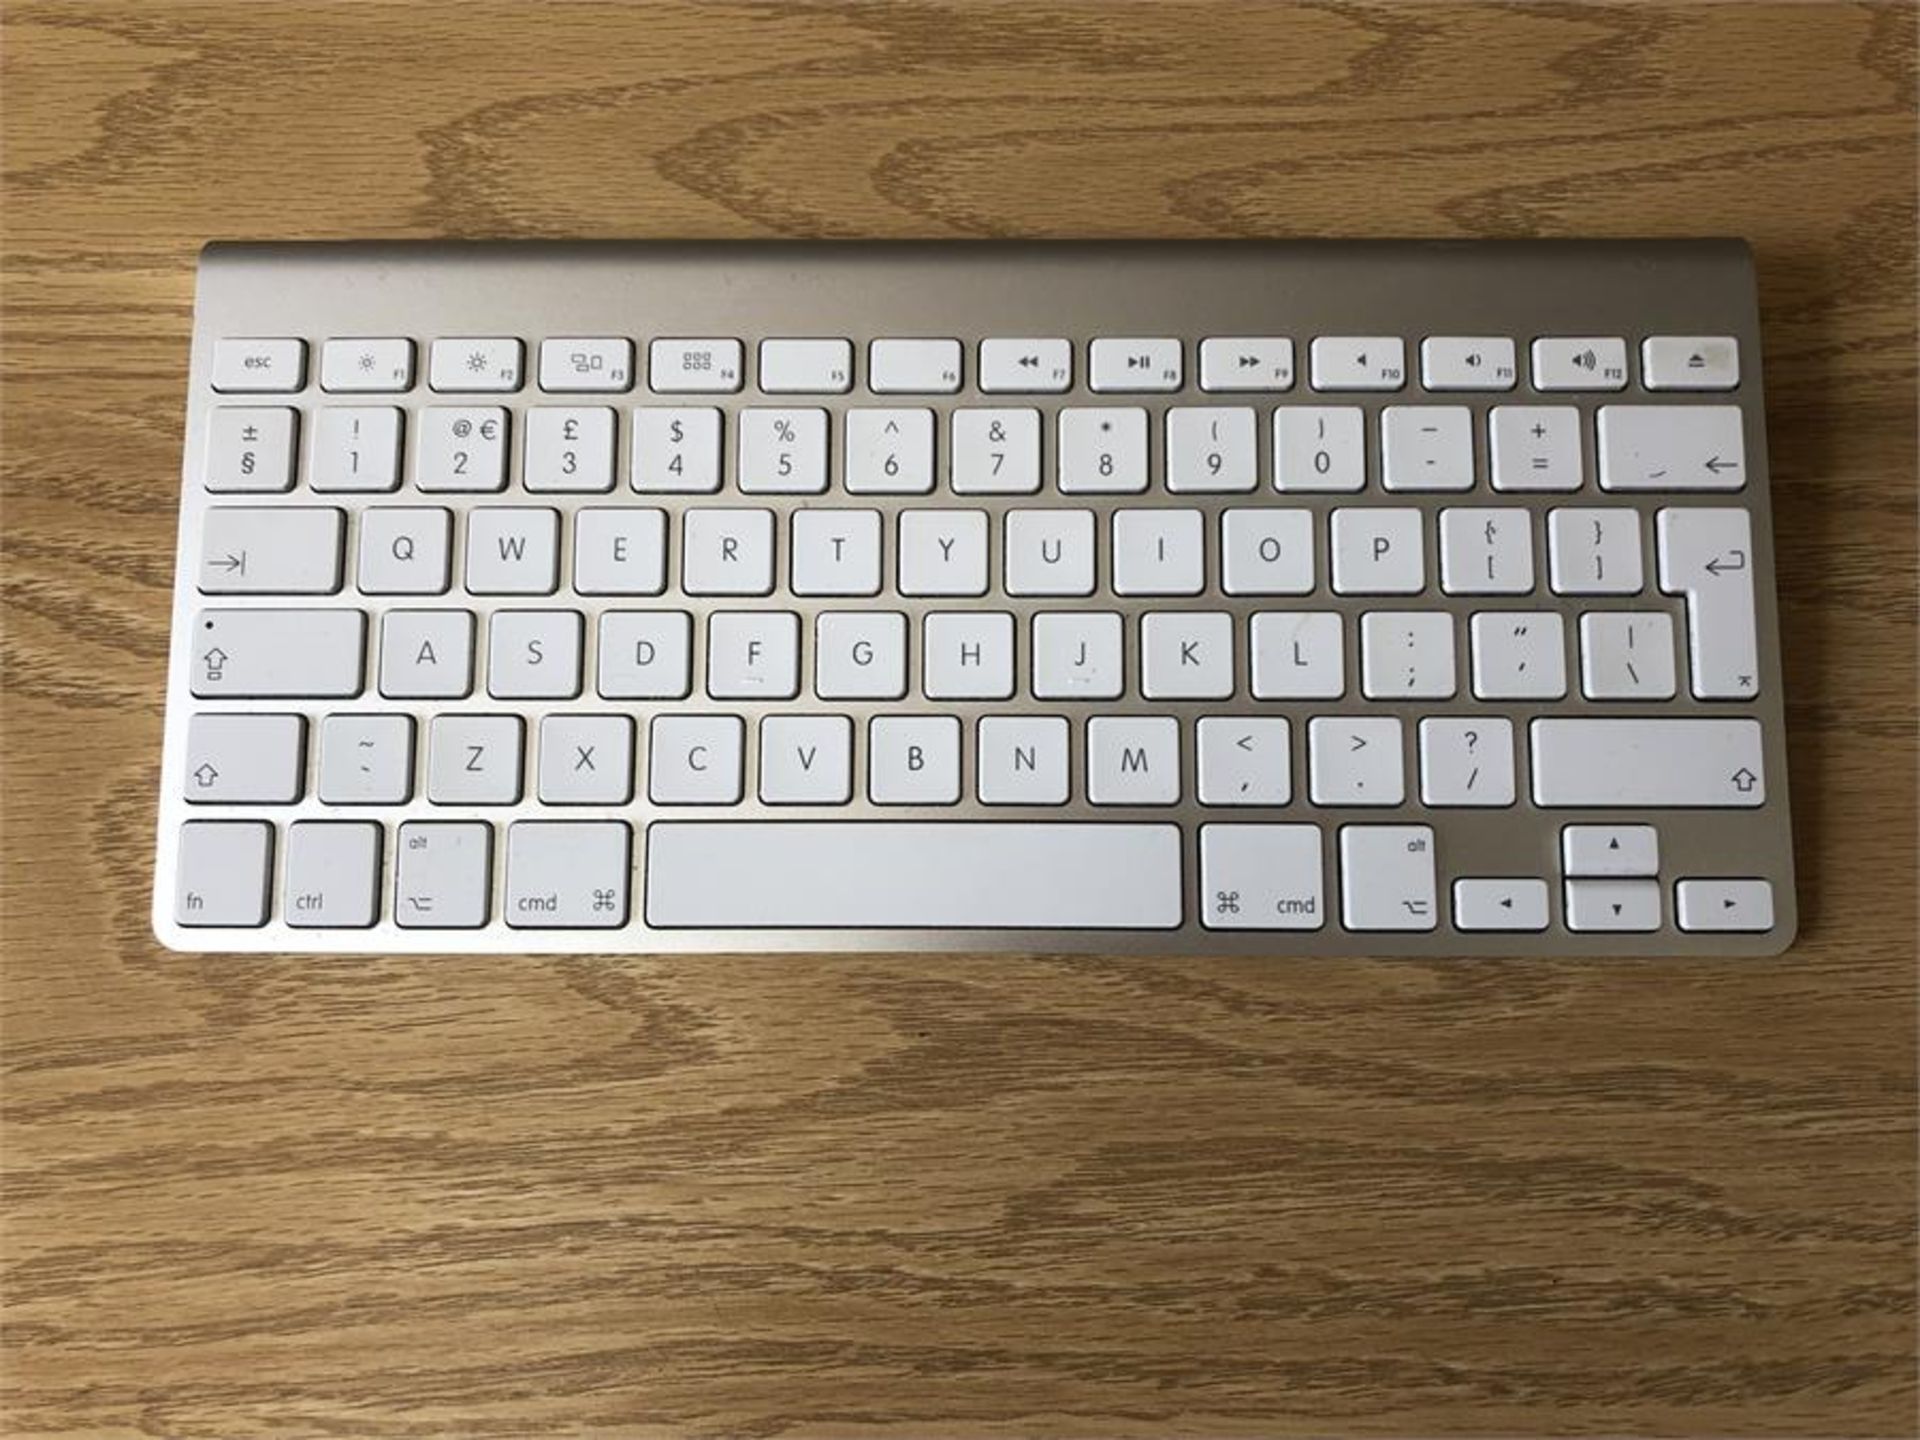 Apple Wireless Keyboard, Model No. A1314 (2009) - Bild 2 aus 3